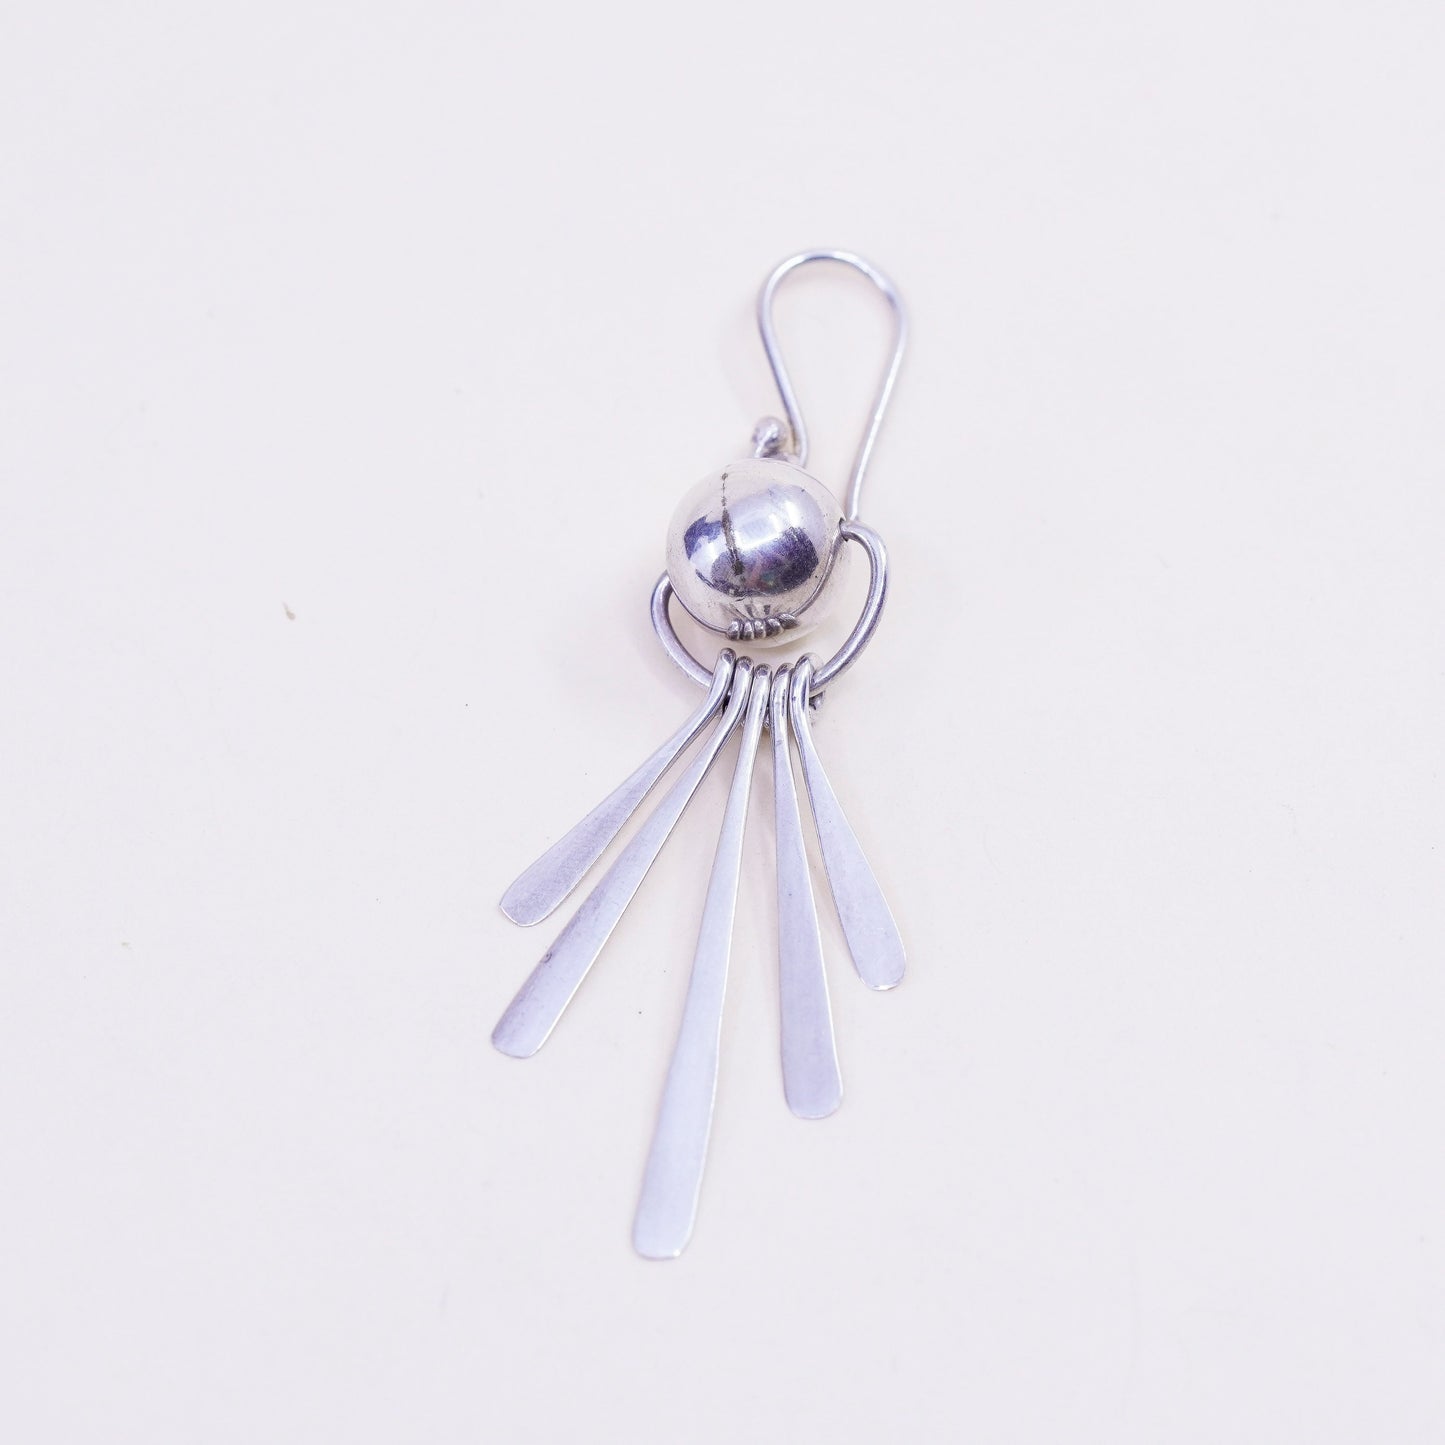 Vintage Sterling silver handmade earrings, modern 925 bead with fringe drop